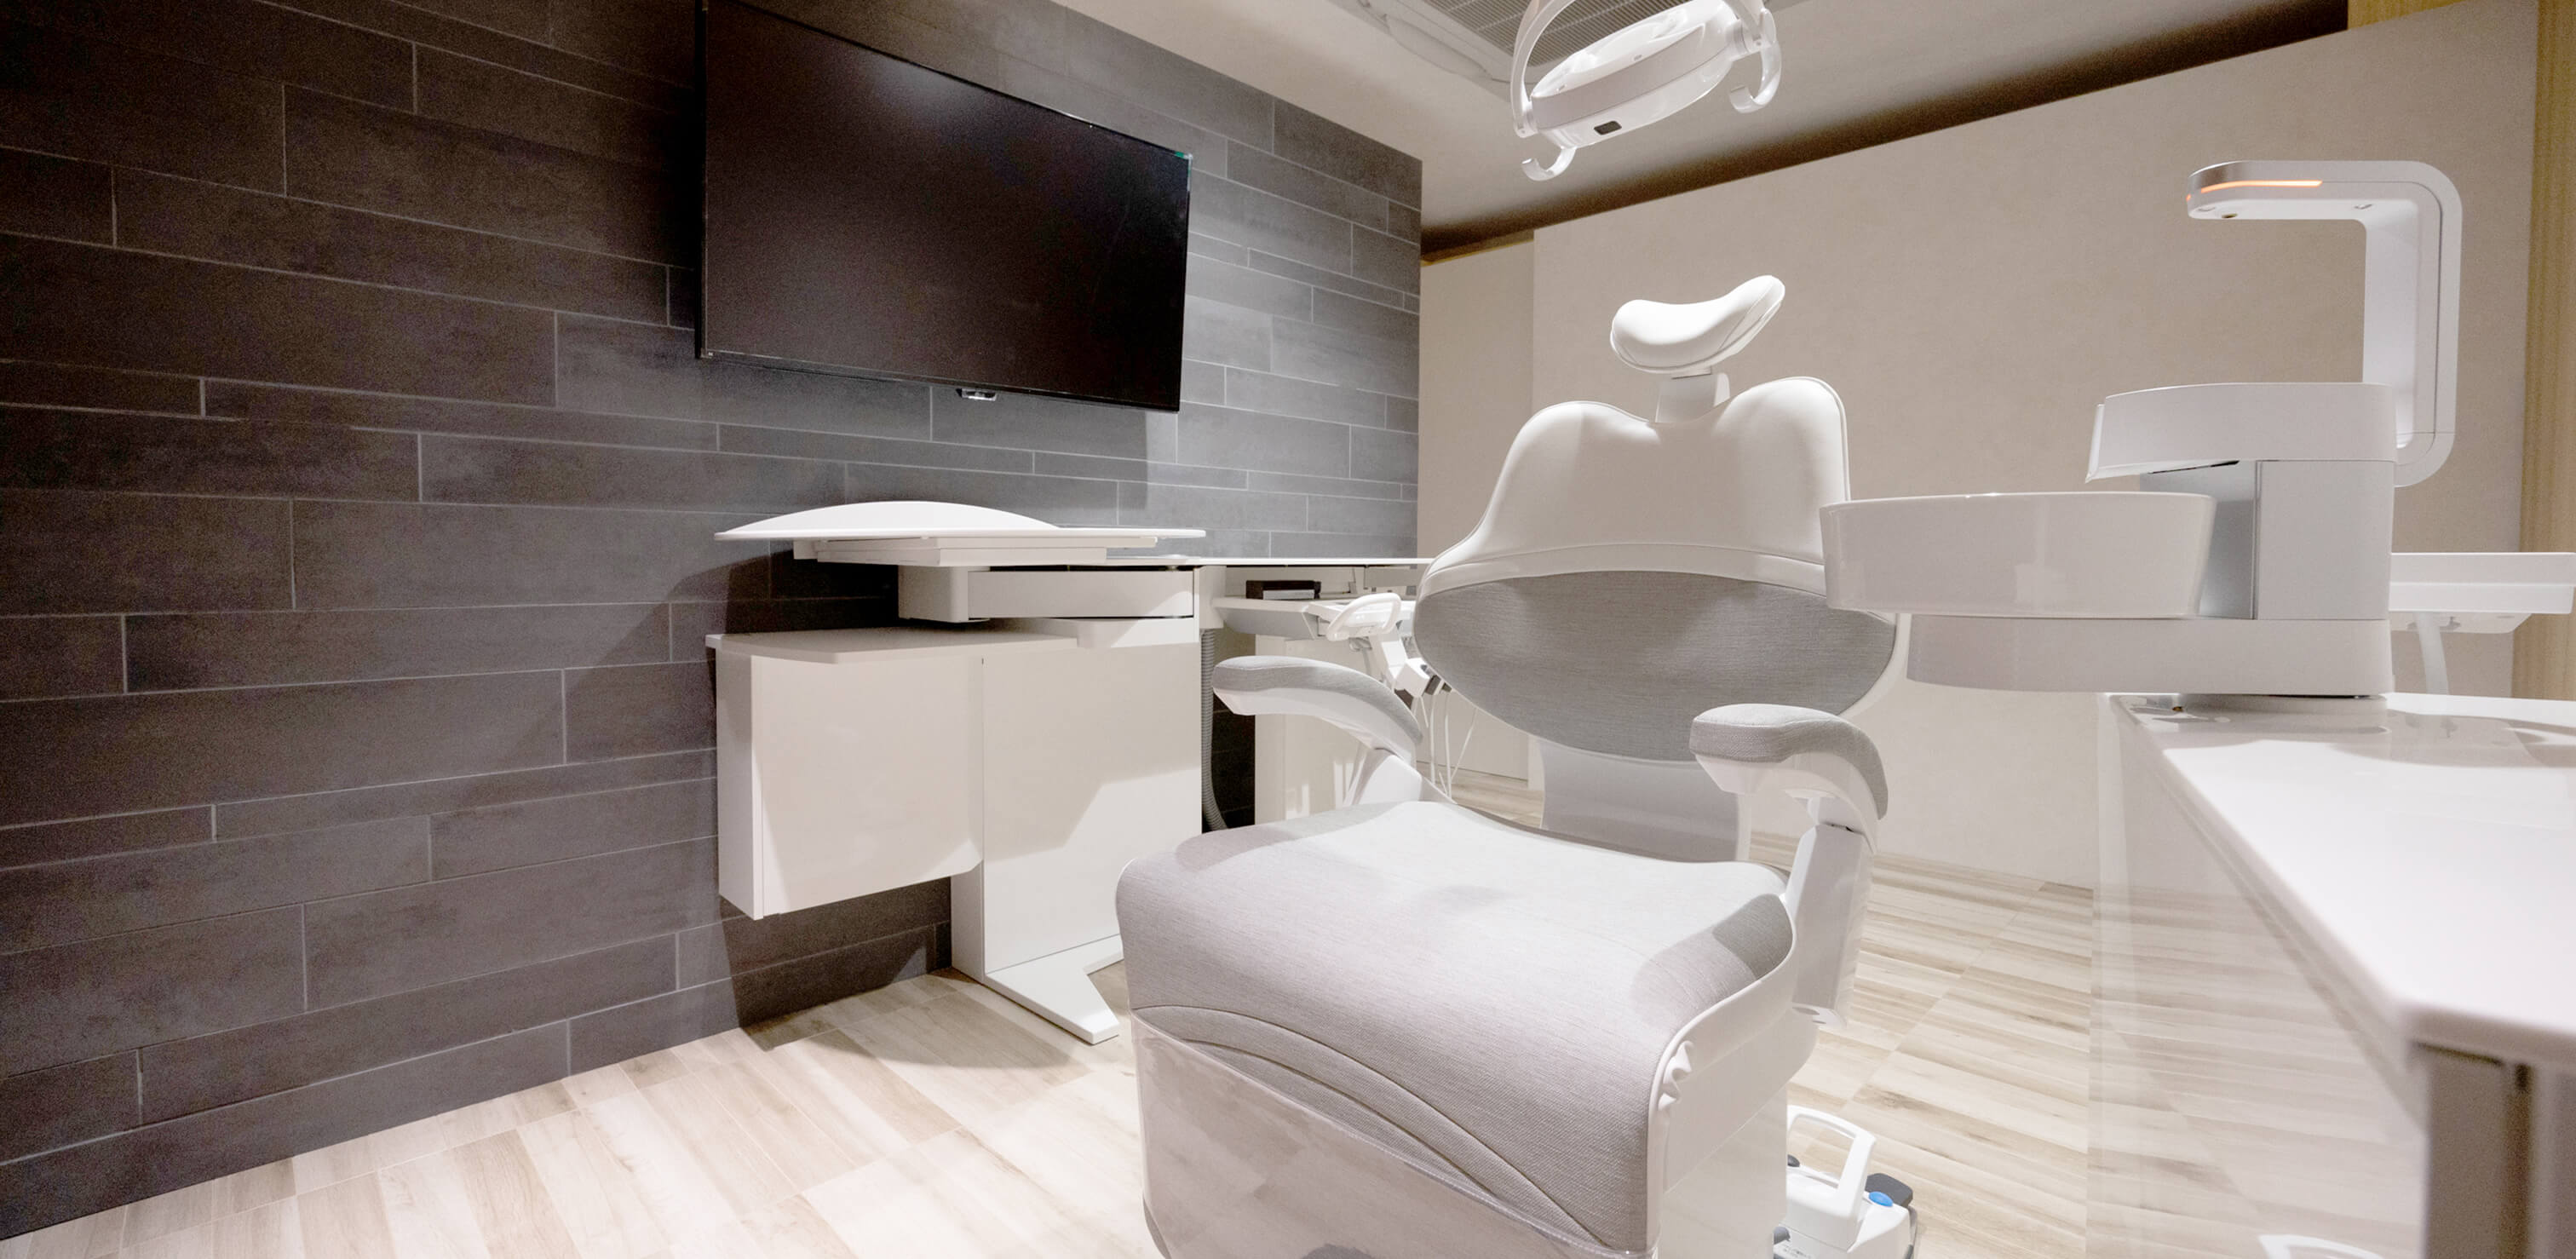 新しい自分探しのお手伝いorthodontic clinic shibuya歯並び治療専門クリニック